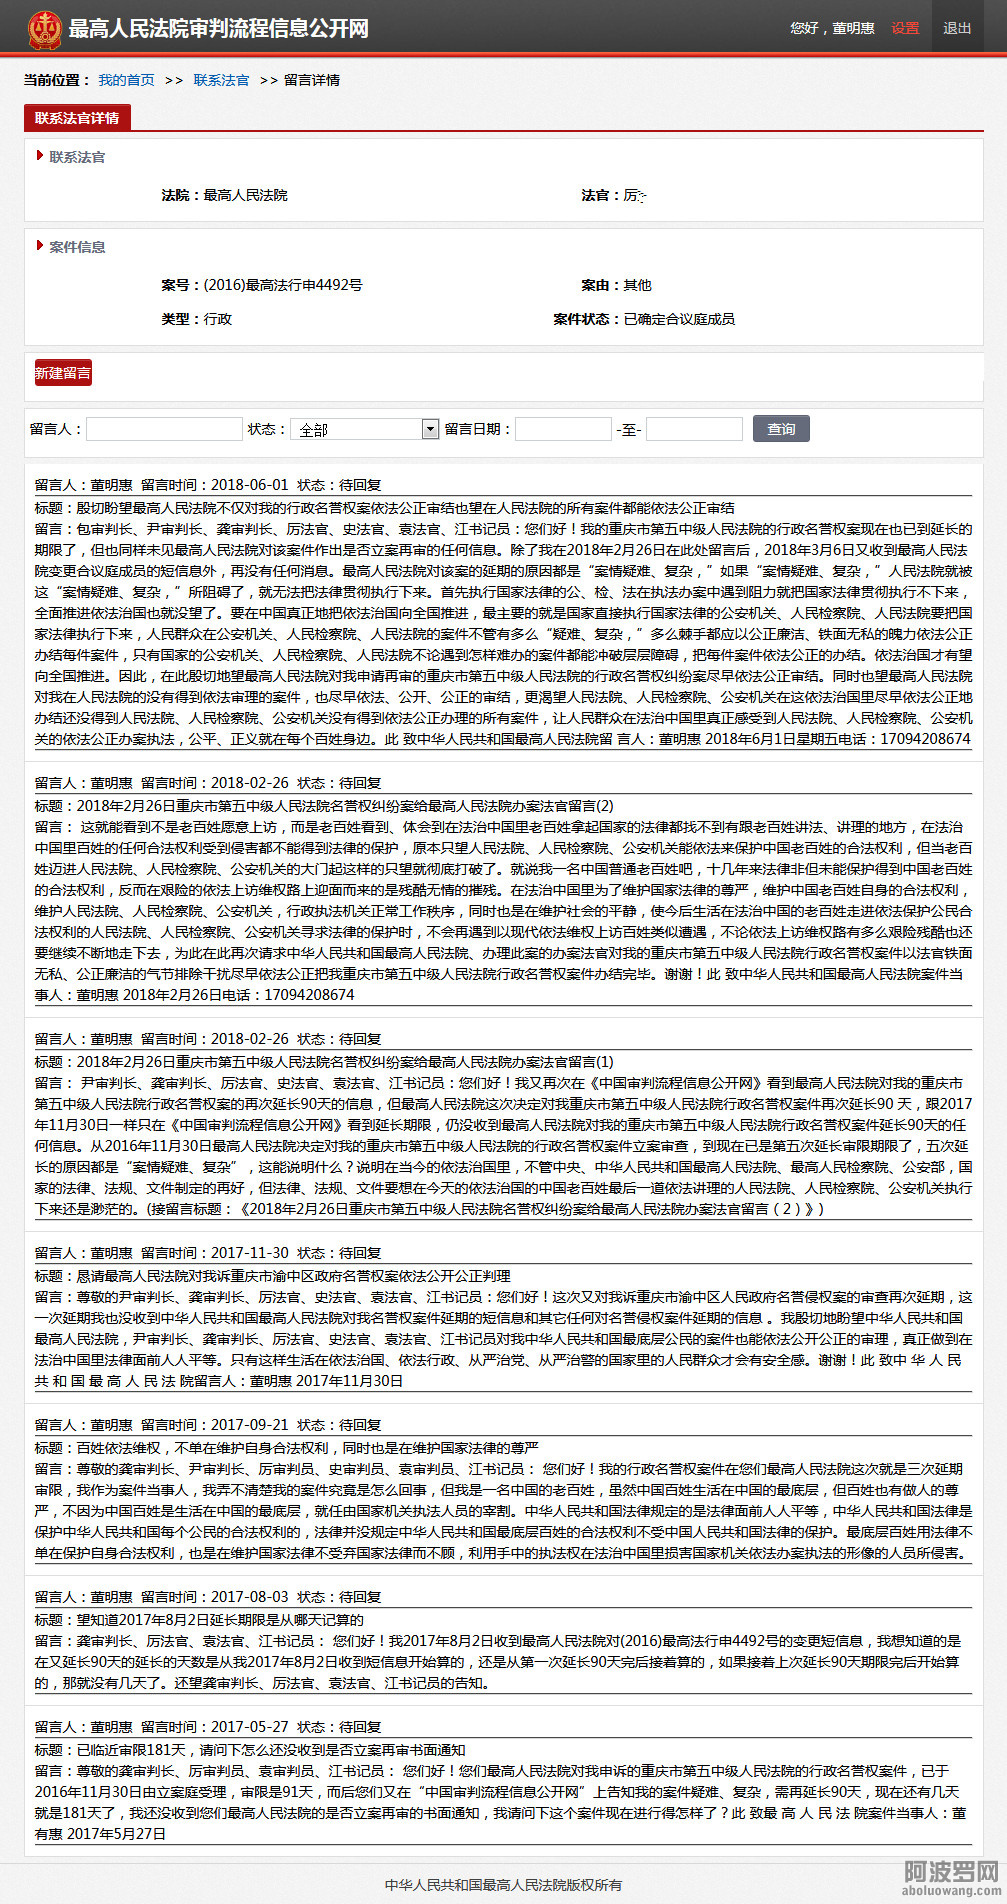 2018年6月1日重庆五中院行政名誉权案在最高人民法院审判流程信息公开网-我的首页-联系.jpg